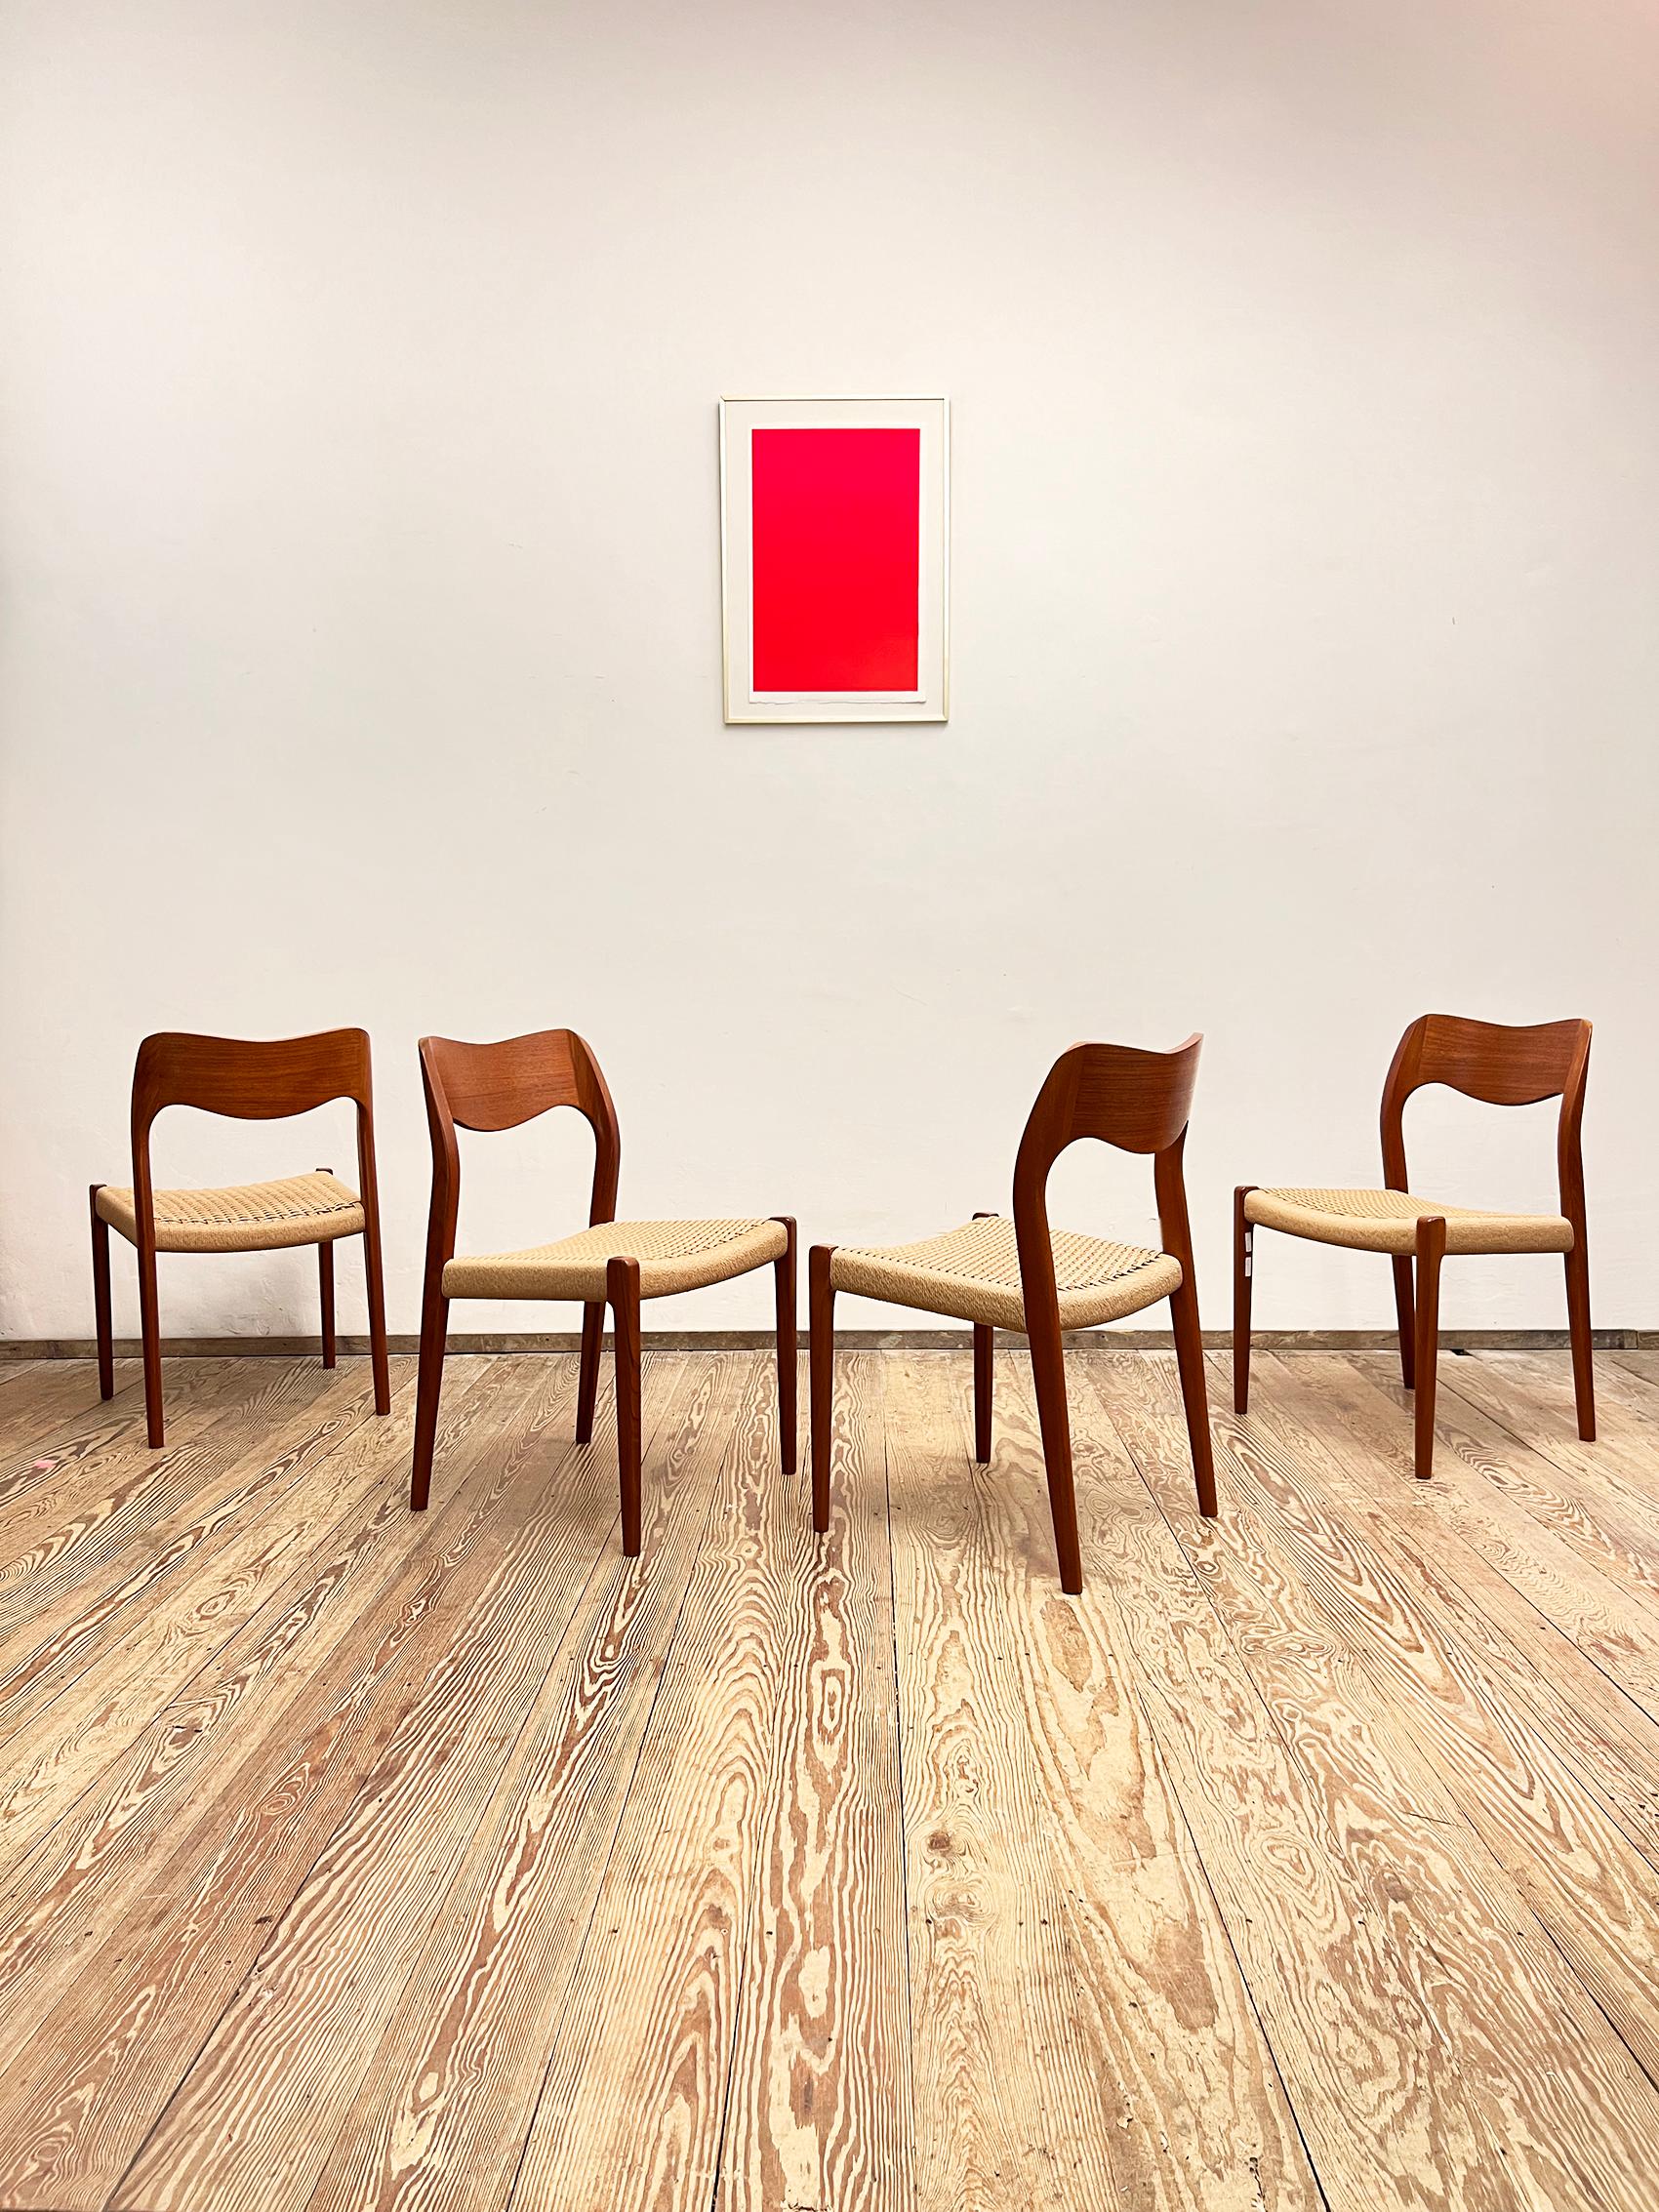 Dimensions 49 x 49 x 79 x 44cm (Largeur x Profondeur x Hauteur x Hauteur du siège)

Ce magnifique ensemble de chaises de salle à manger vintage conçues par Niels O. Møller a été fabriqué par I.L.A. Møller au Danemark. L'ensemble comprend 4 chaises